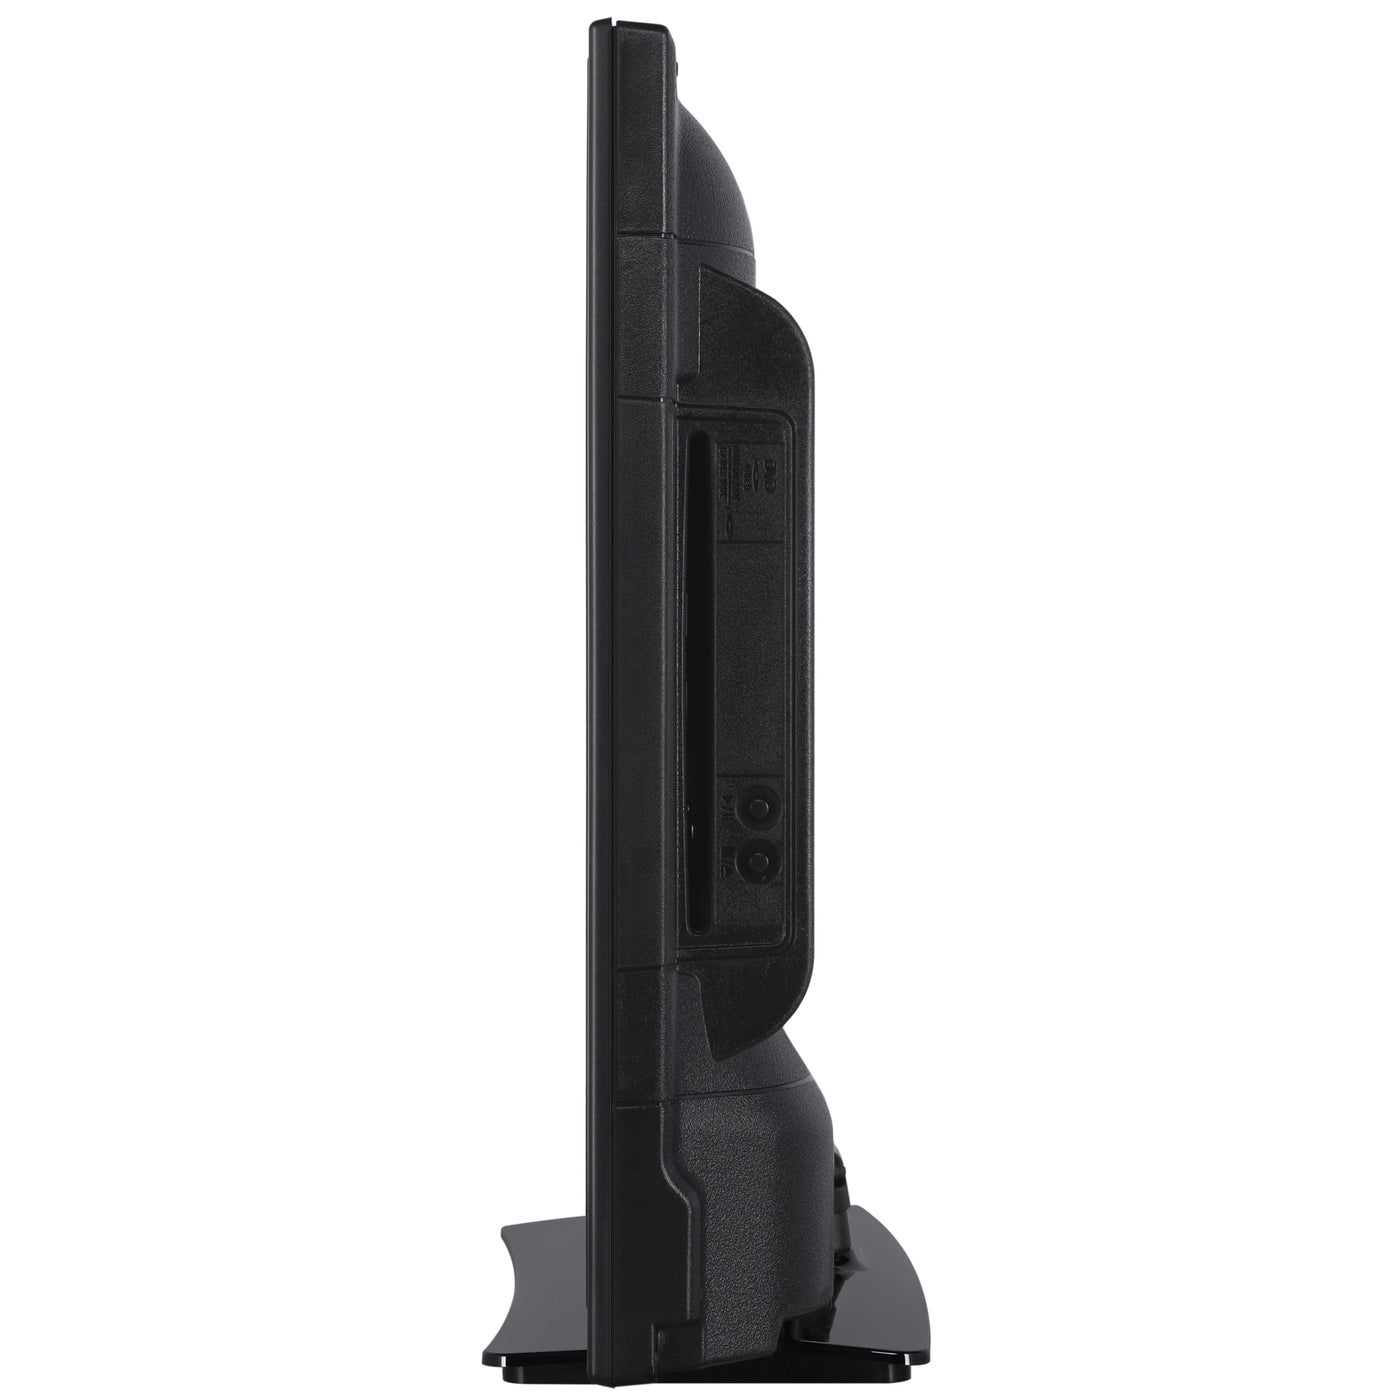 LENCO DVL-2483BK (V2) - 24" Smart TV met ingebouwde DVD speler en 12V auto adapter - Zwart